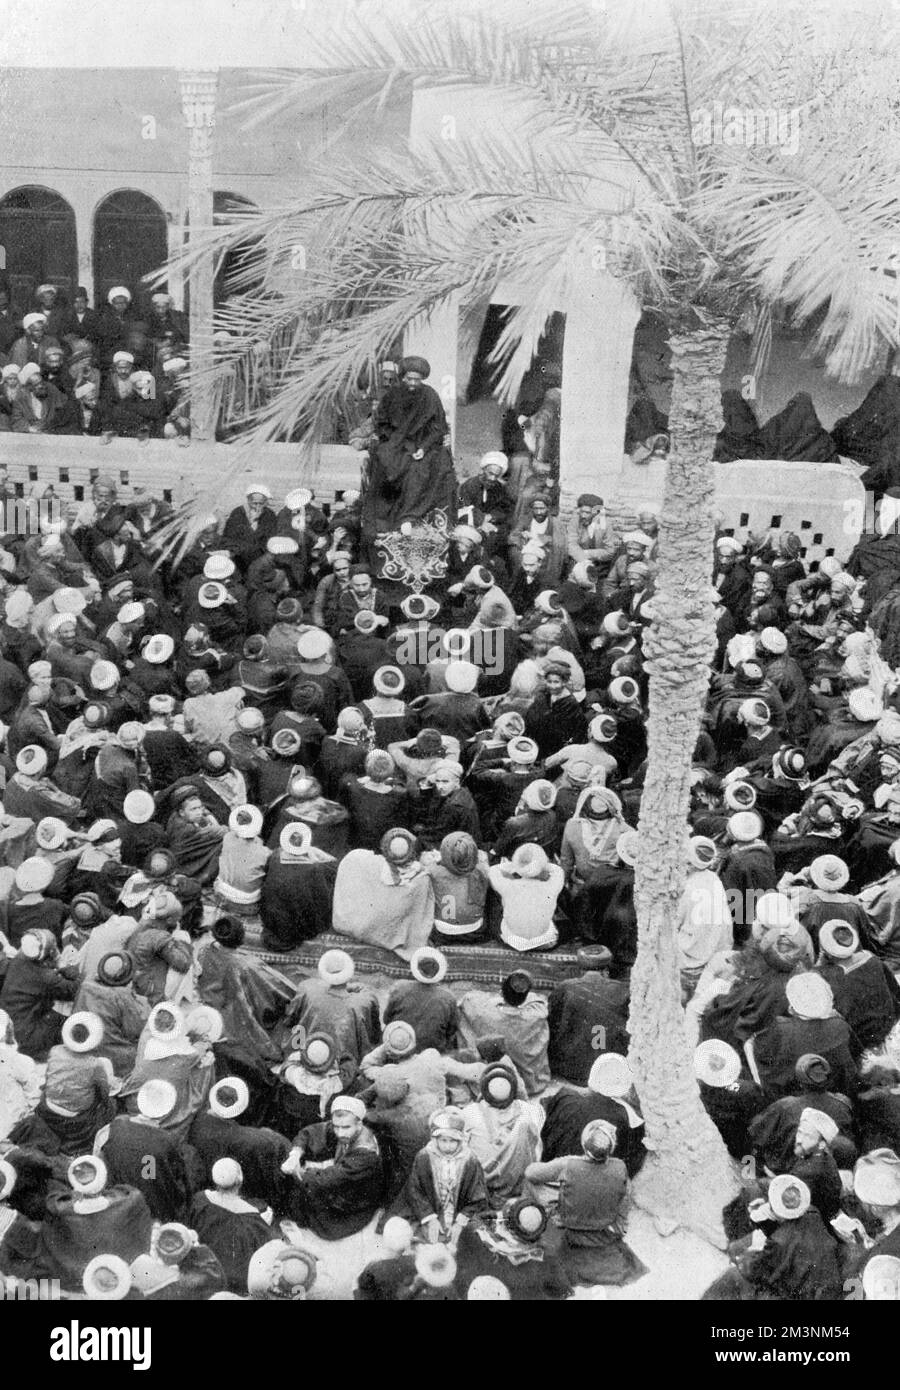 Un groupe de Perses écoute un discours prononcé par un représentant du Shah pour inculquer la loyauté à ses sujets. Date: 1909 Banque D'Images